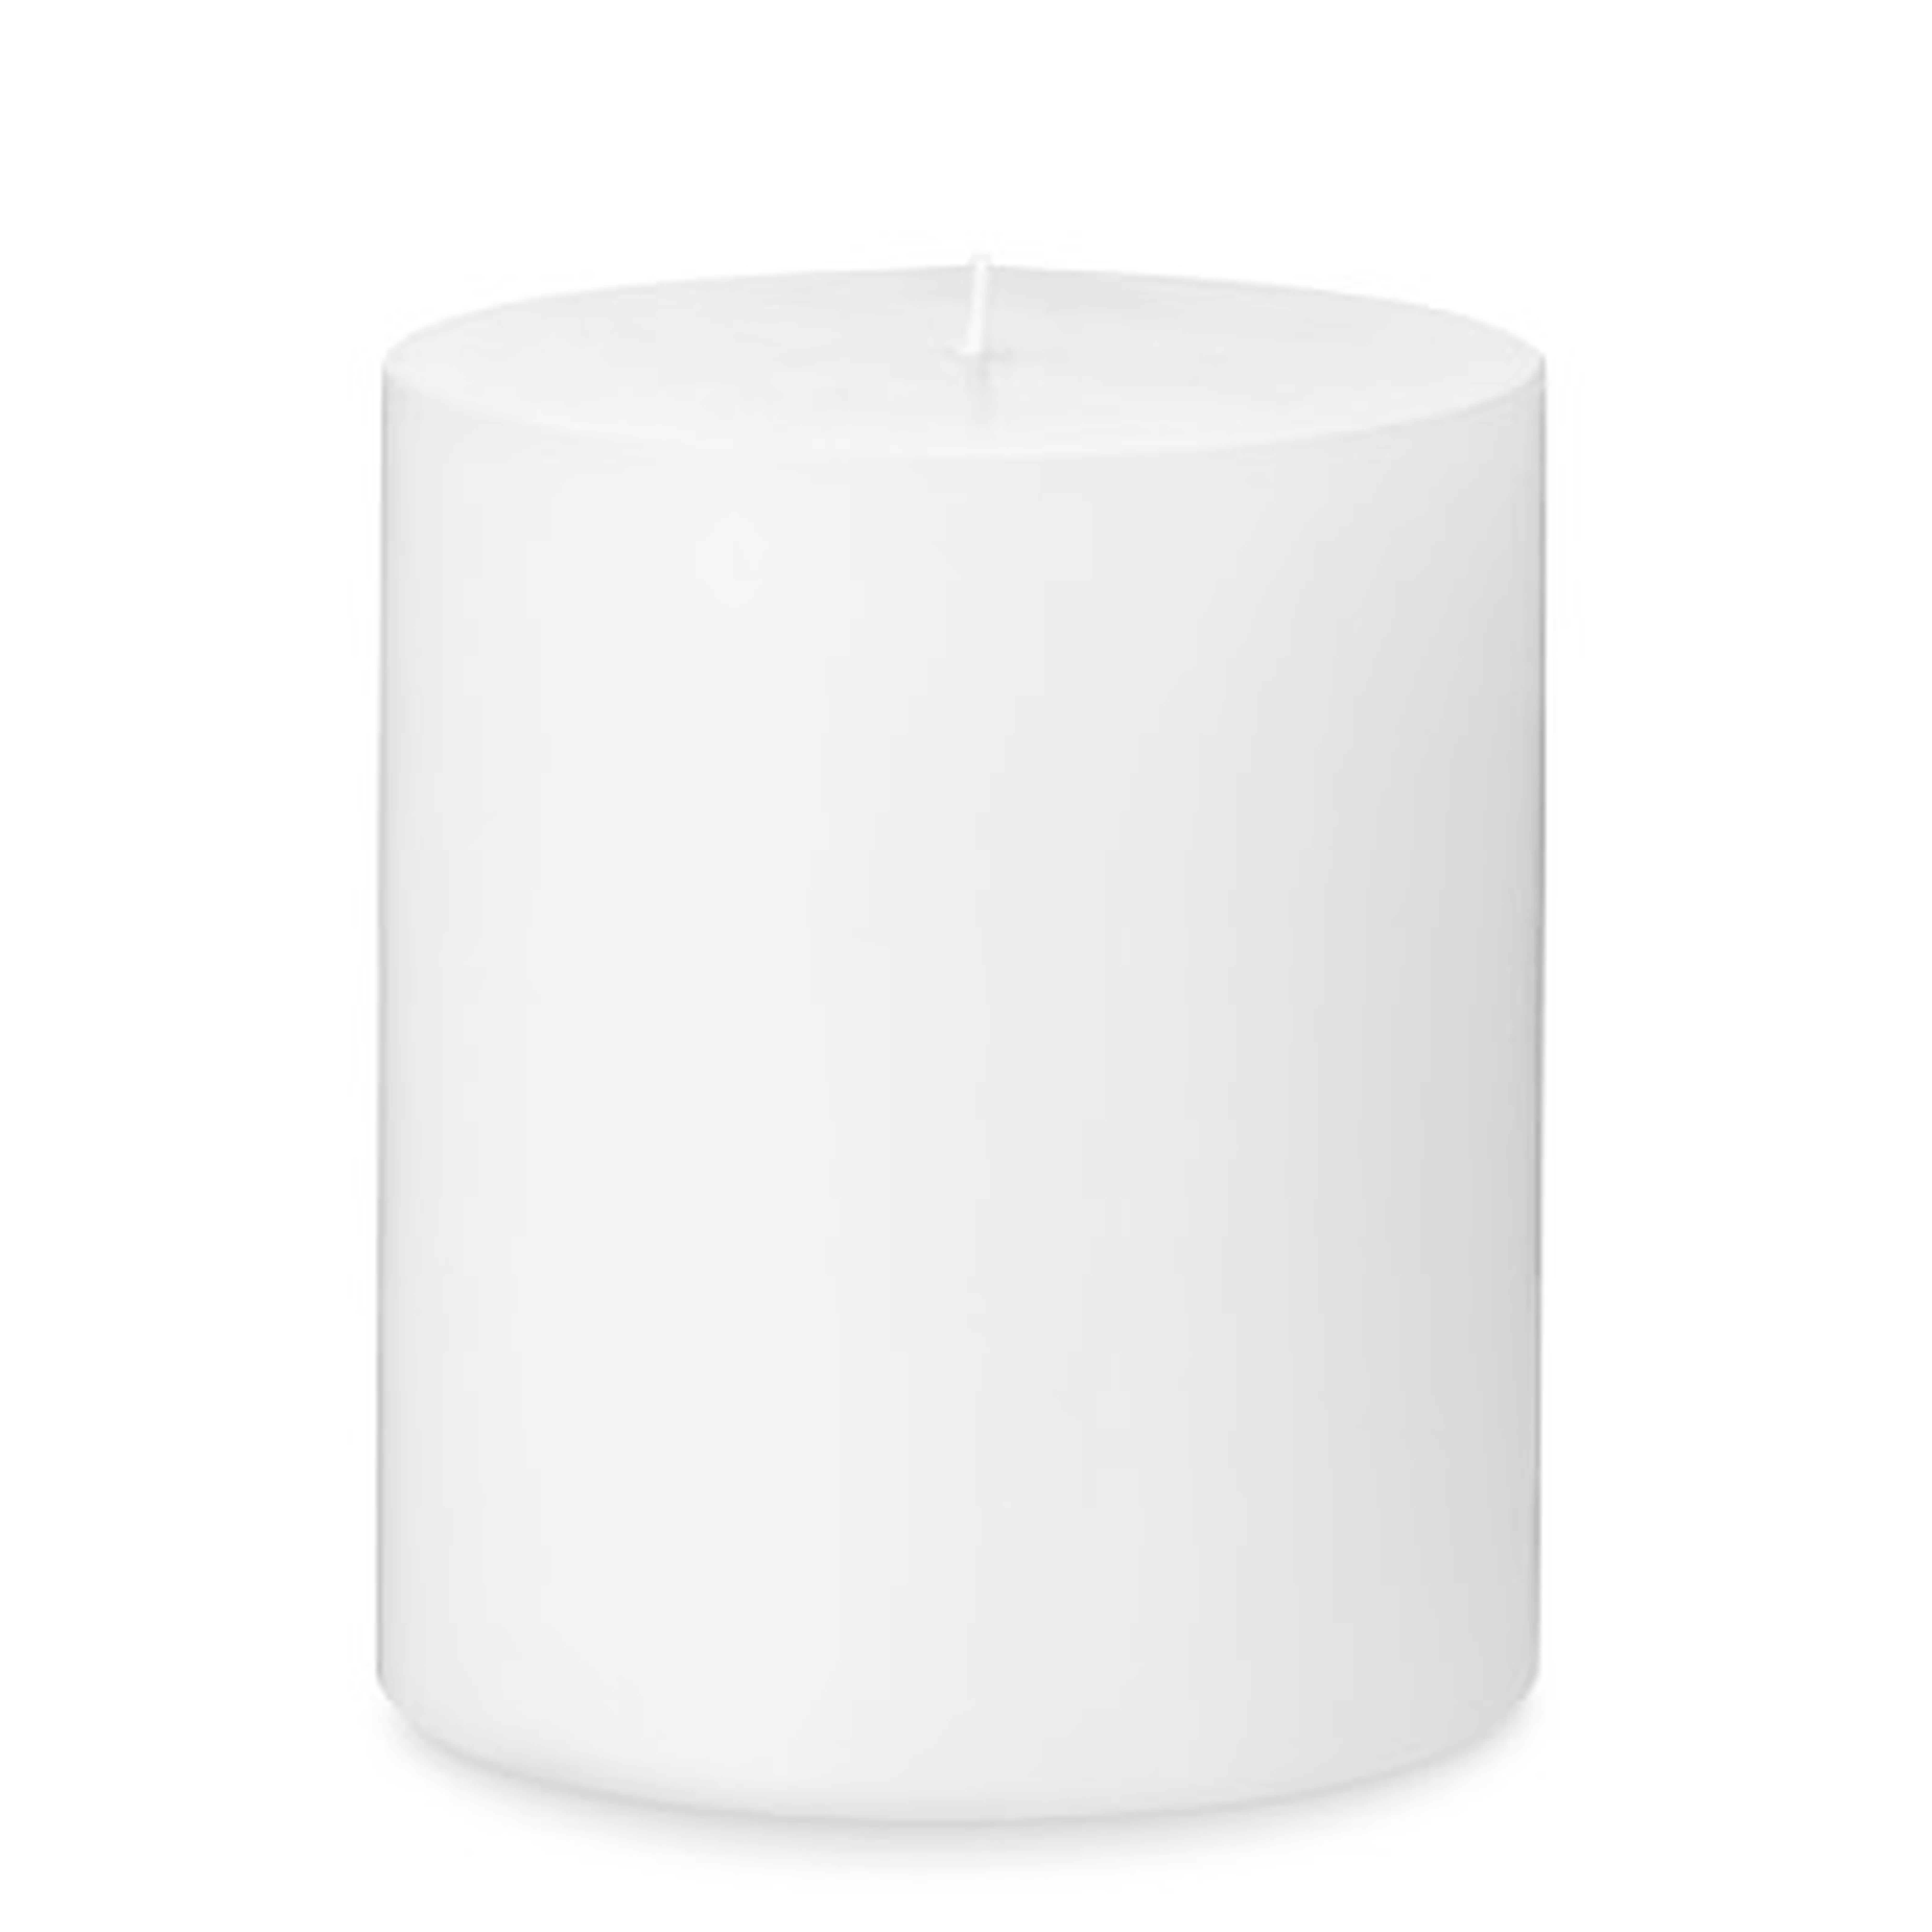 Pillar Candle, White, 4" X 4.5" - Williams Sonoma